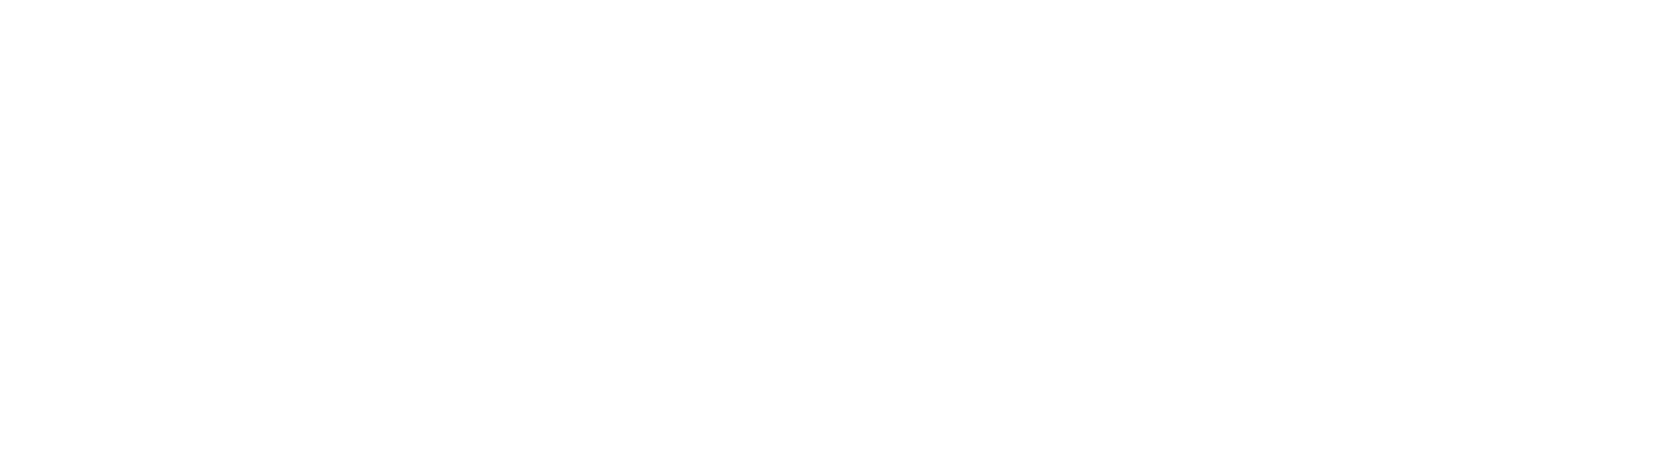 FixitDnow-Appliance-Repair-OG-File-White